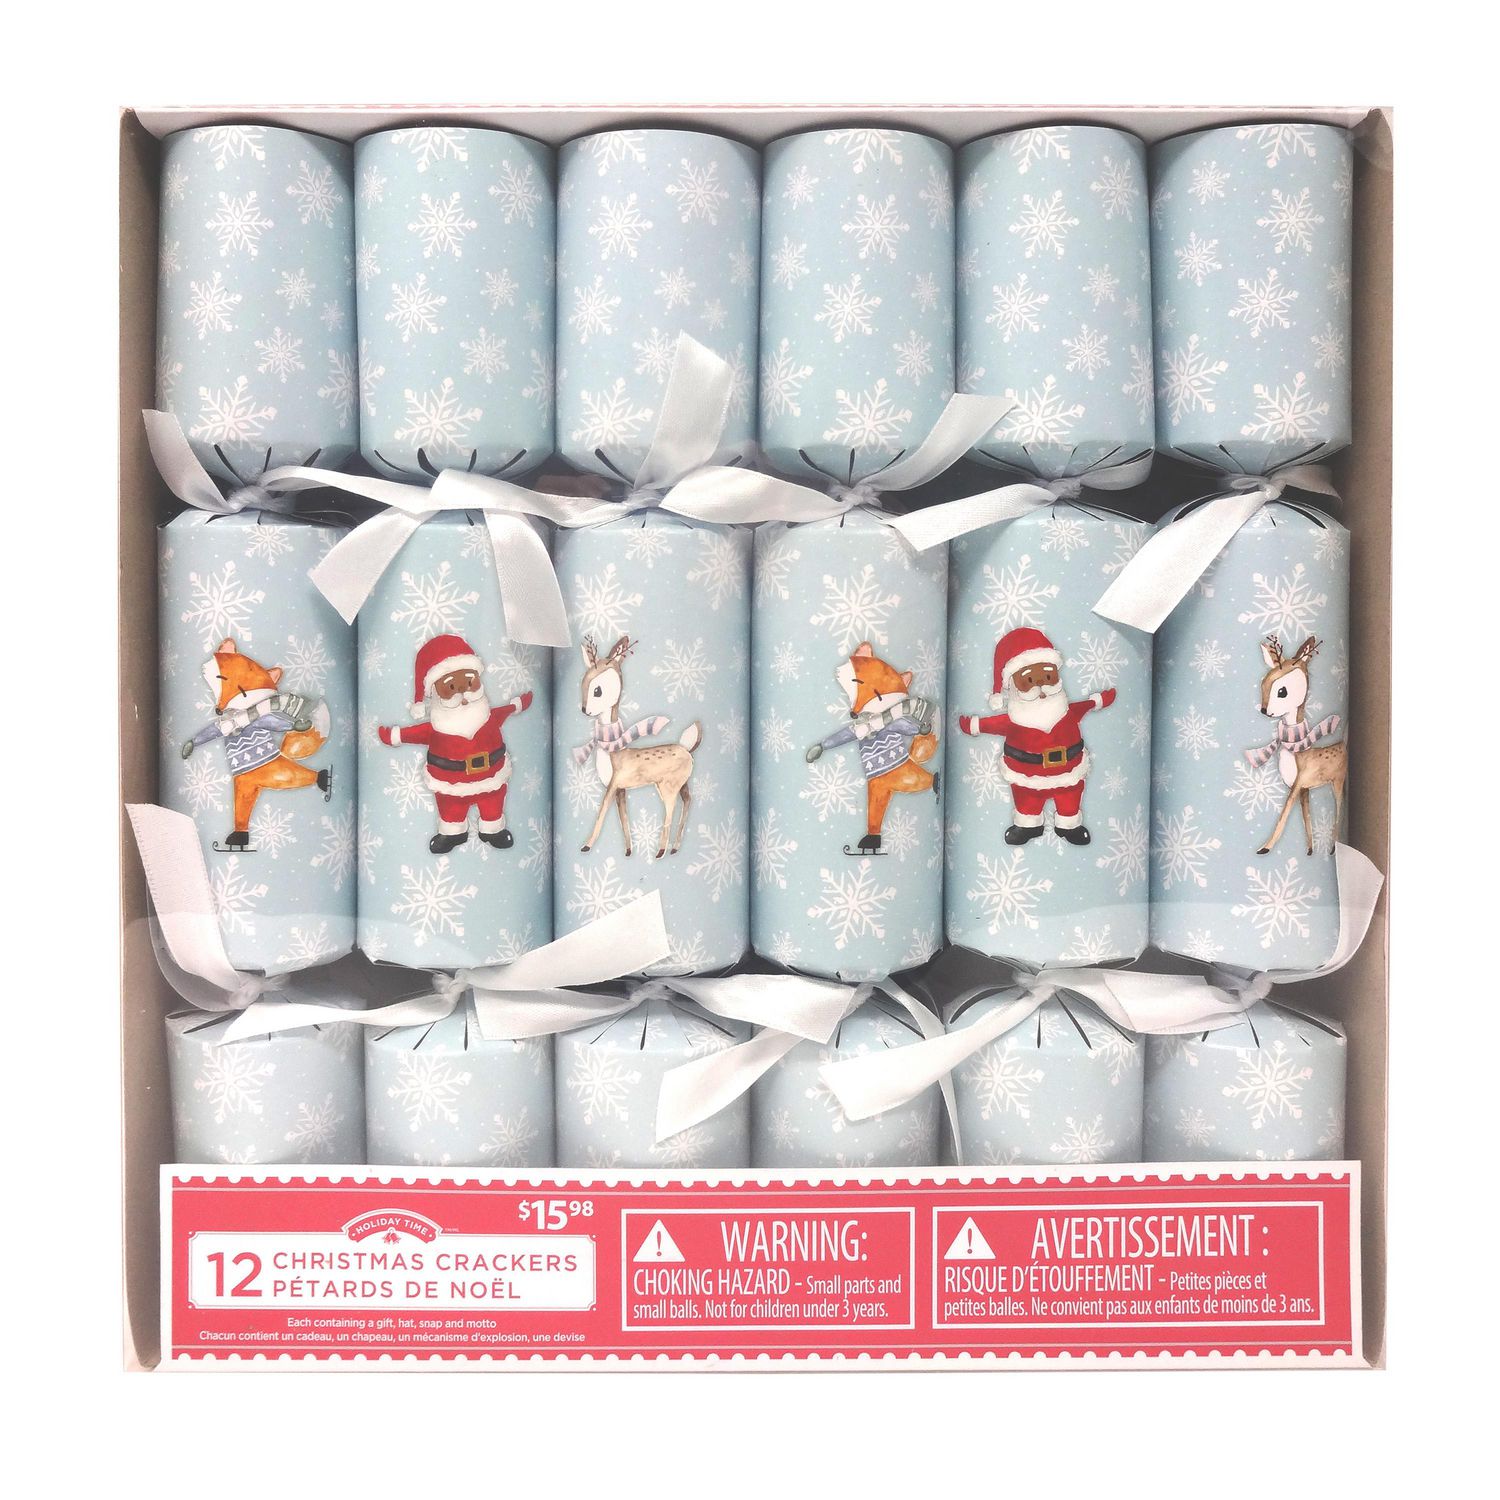 Festive 5 Minute Snowman Crackers + 14 Quick Christmas Appetizer Ideas -  Simplify, Live, Love